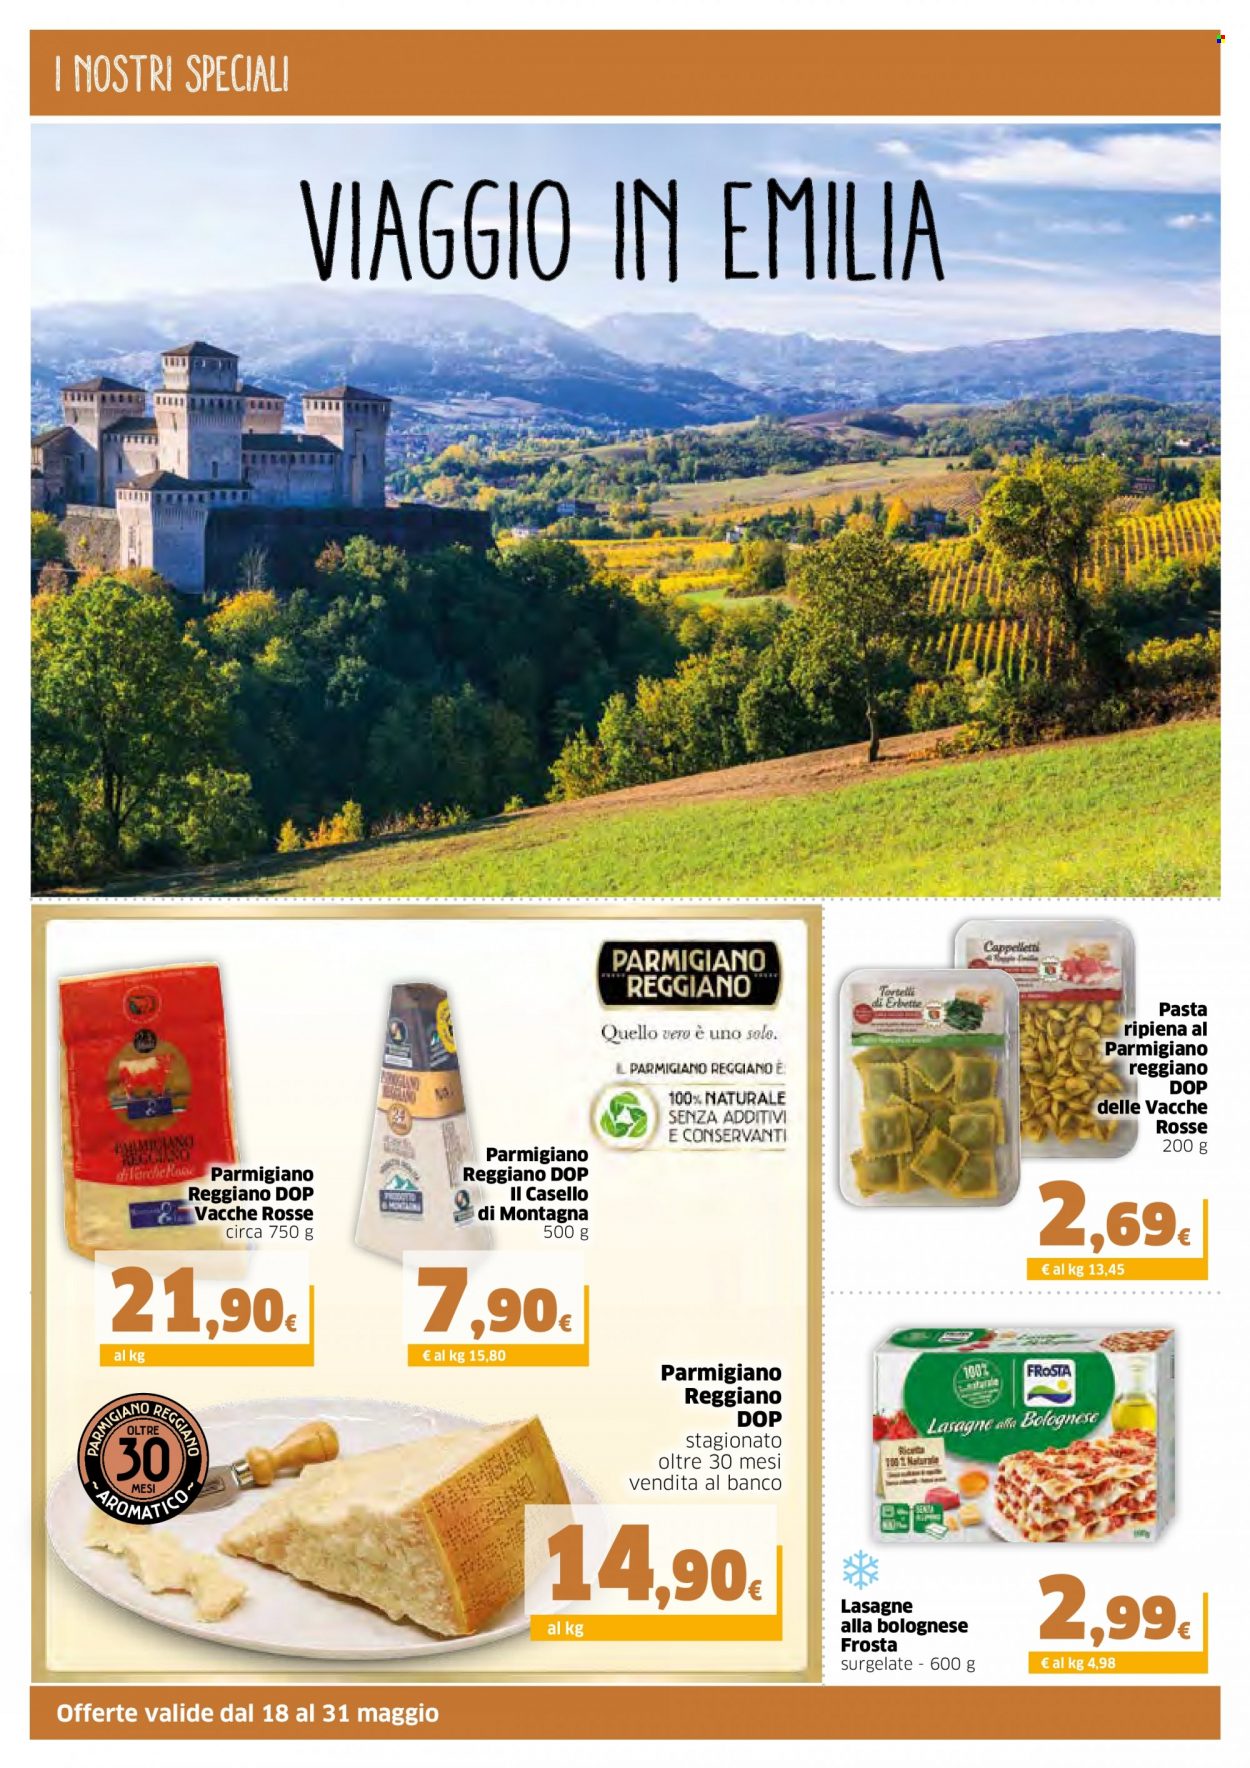 thumbnail - Volantino Sigma - 18/5/2022 - 31/5/2022 - Prodotti in offerta - Frosta, lasagne, lasagne alla bolognese, formaggio, parmigiano, pasta. Pagina 6.